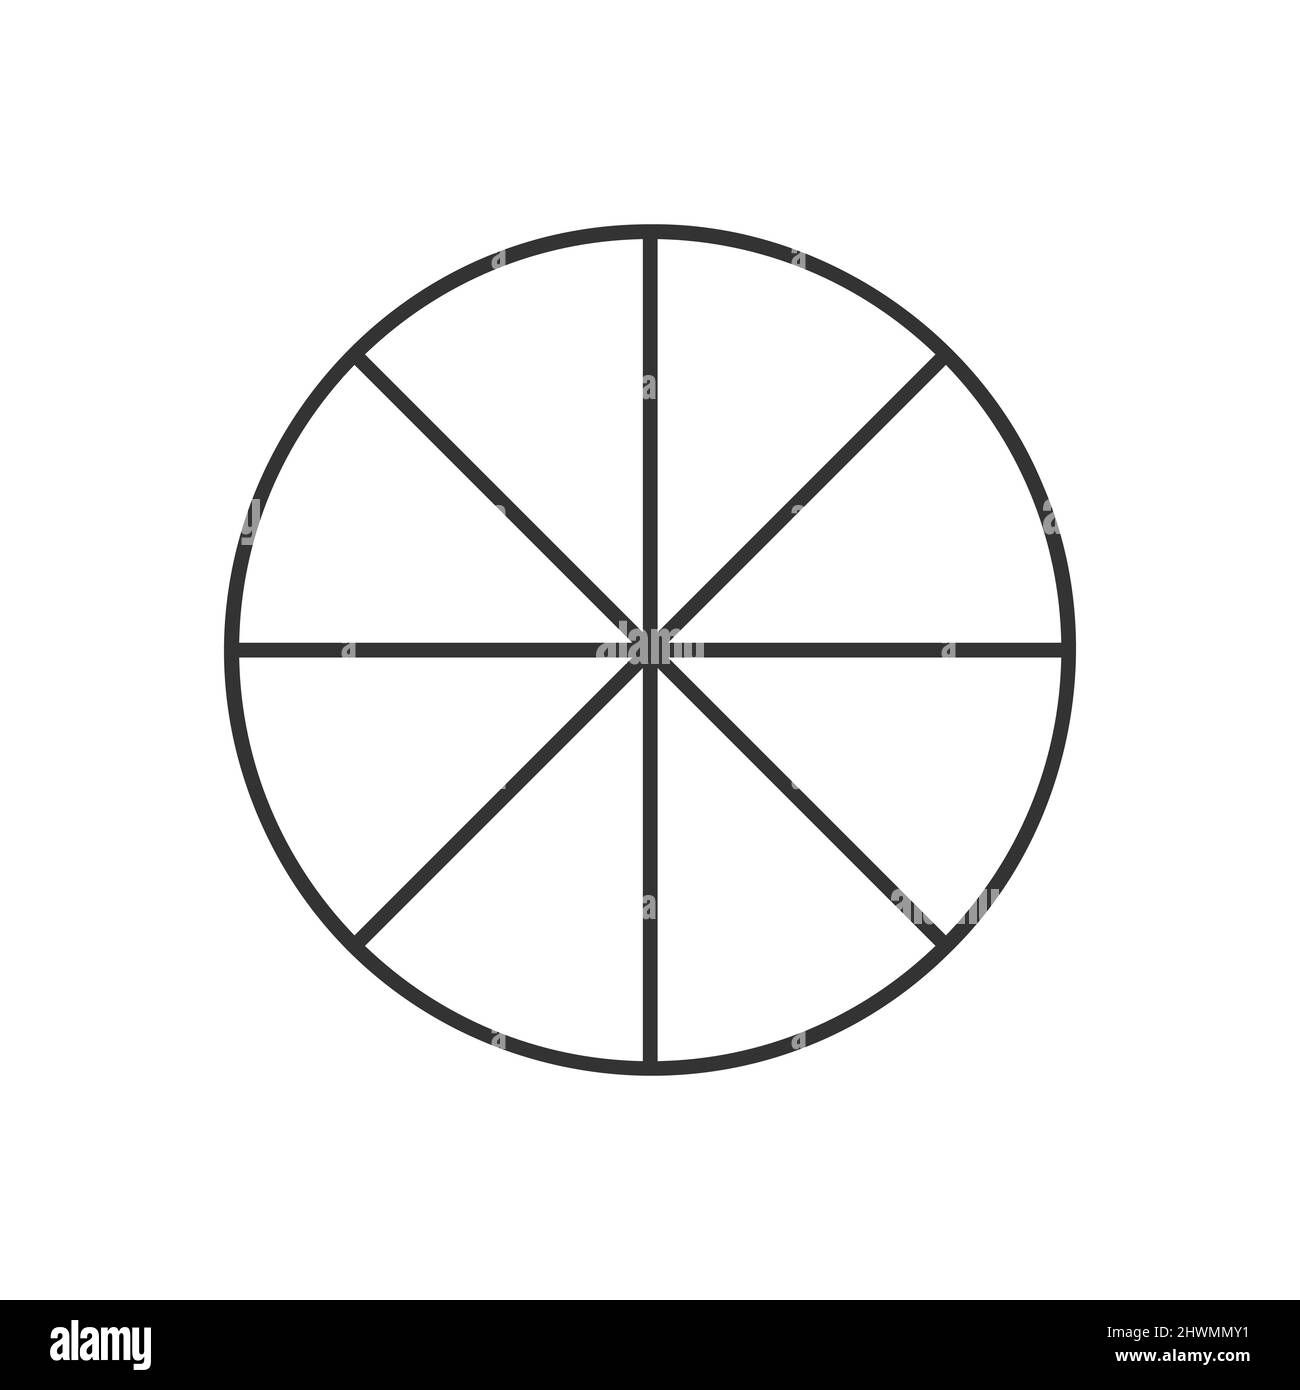 Cerchio diviso in 8 segmenti. Forma rotonda della pizza o della torta tagliata in otto fette uguali nello stile del contorno. Semplice modello di business chart. Illustrazione lineare vettoriale. Illustrazione Vettoriale